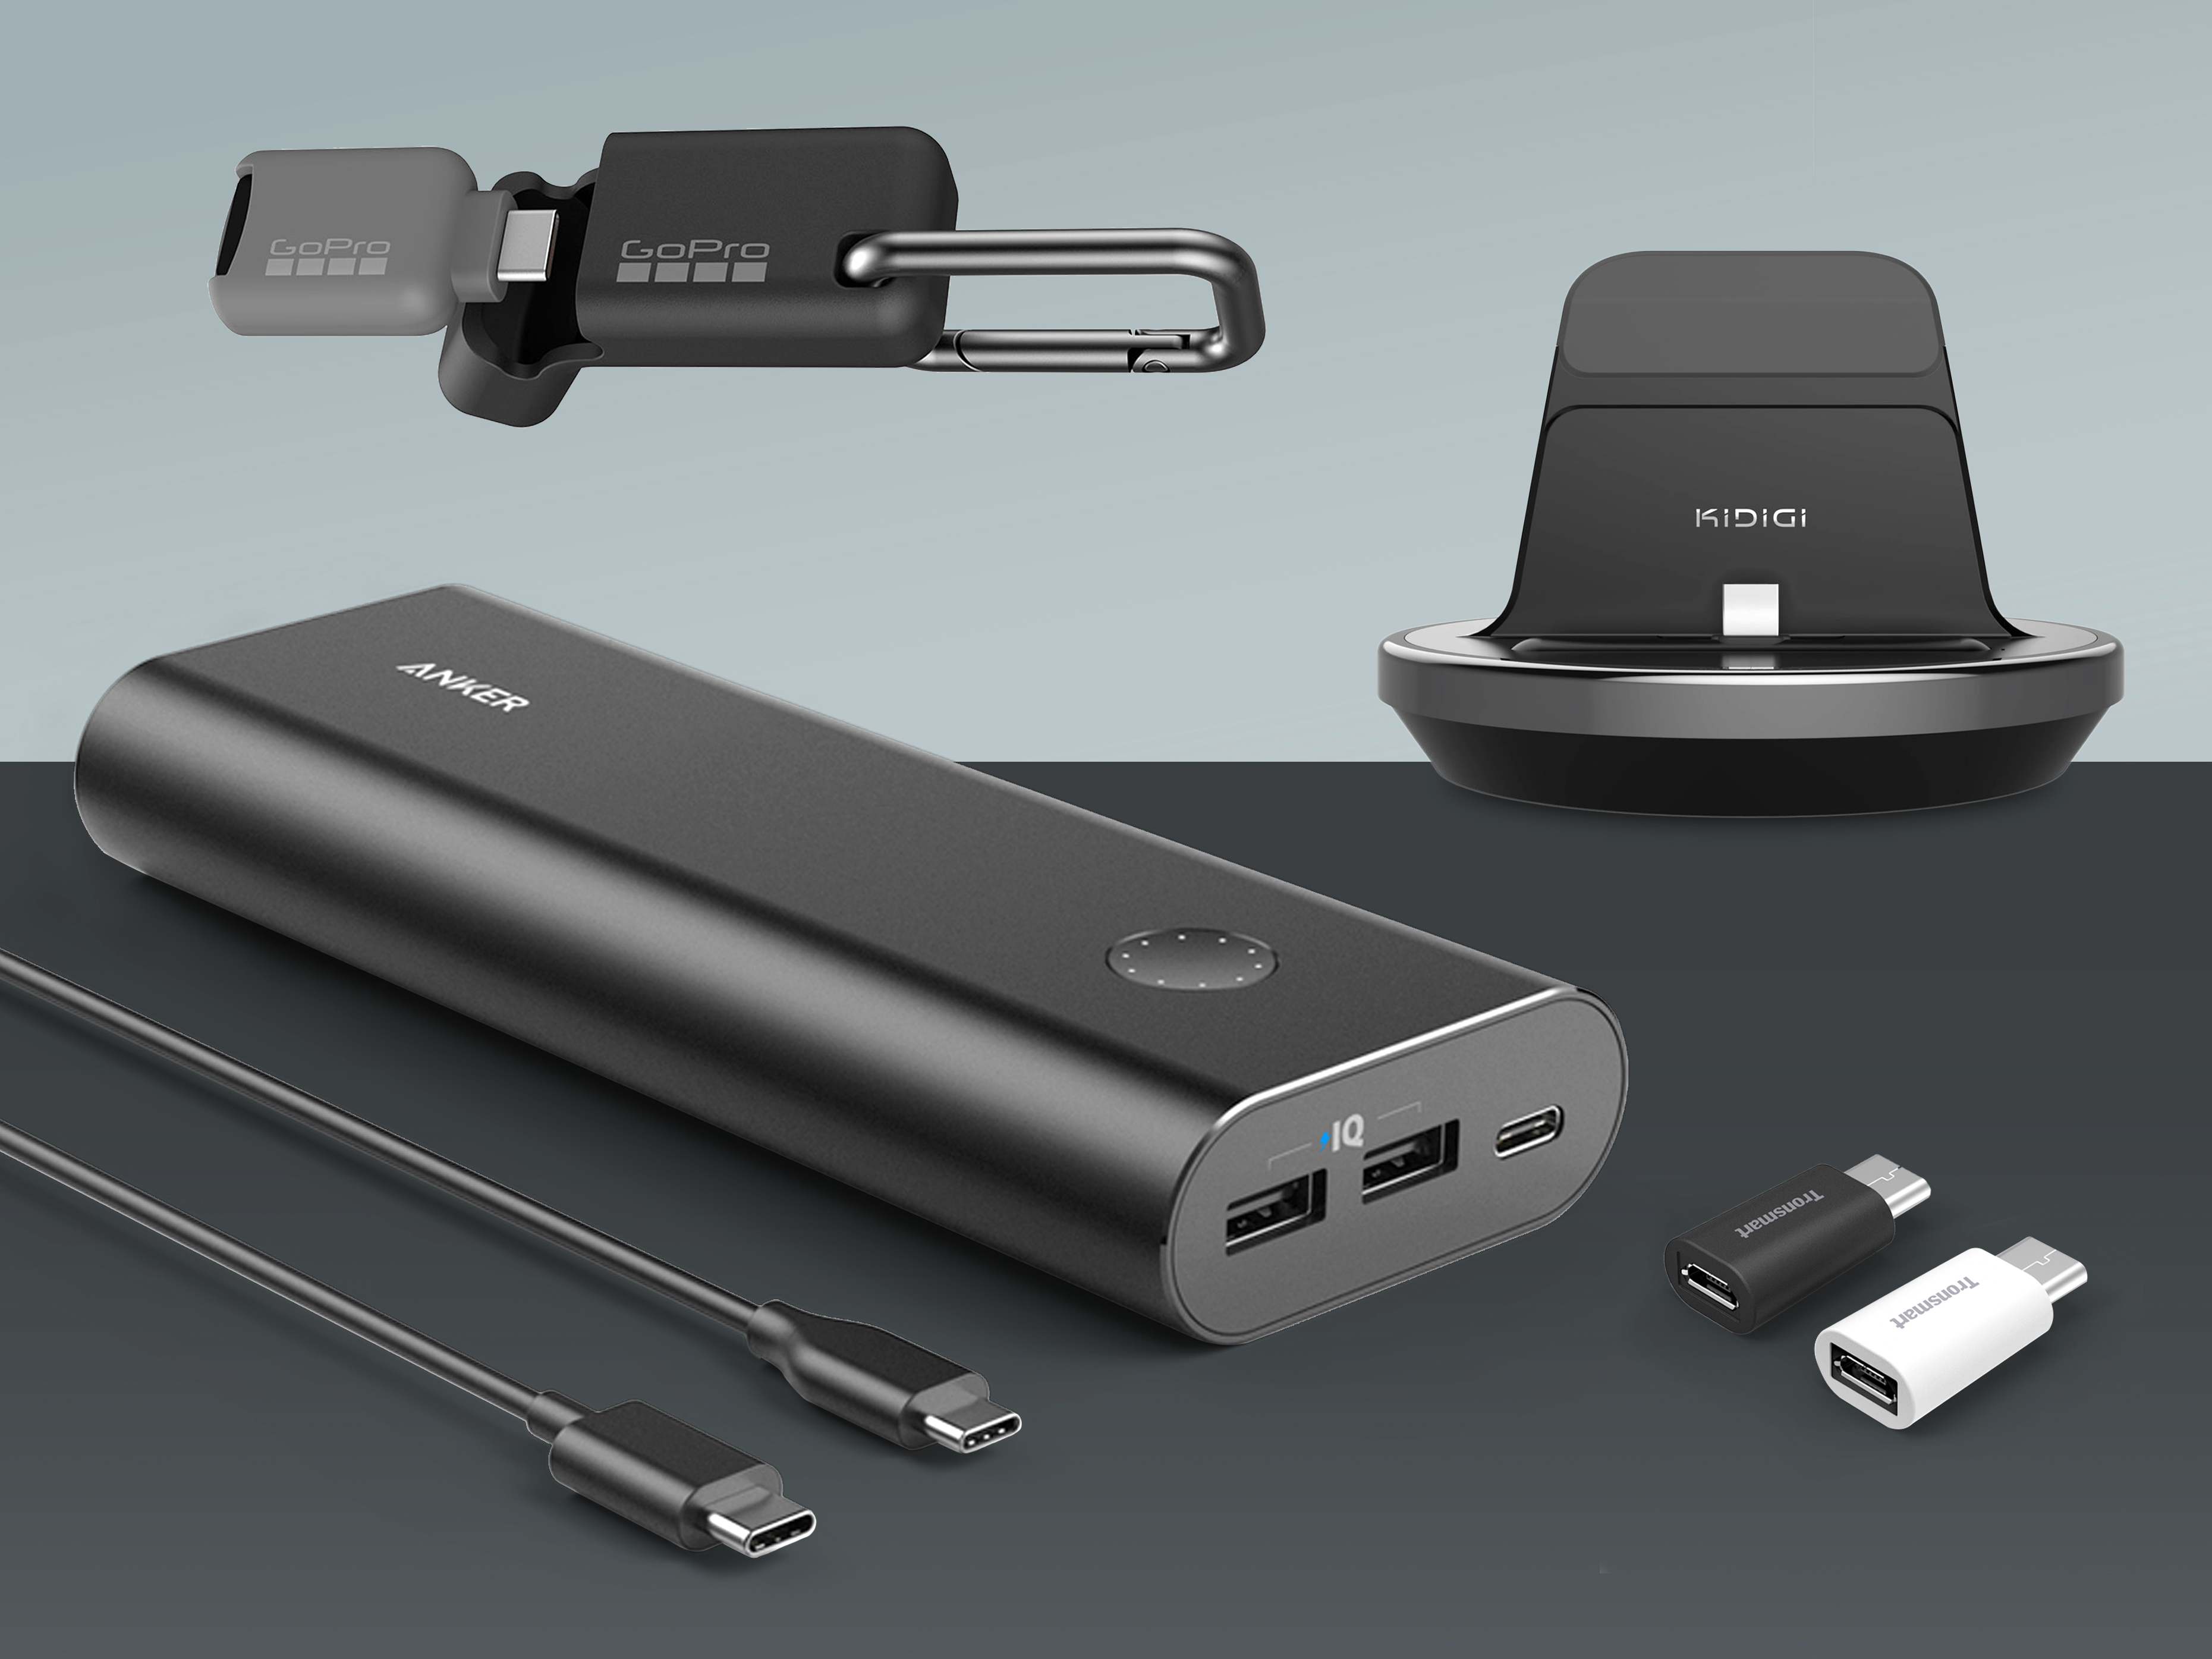 Fremskridt godkende Medarbejder The best USB-C smartphone accessories | Stuff